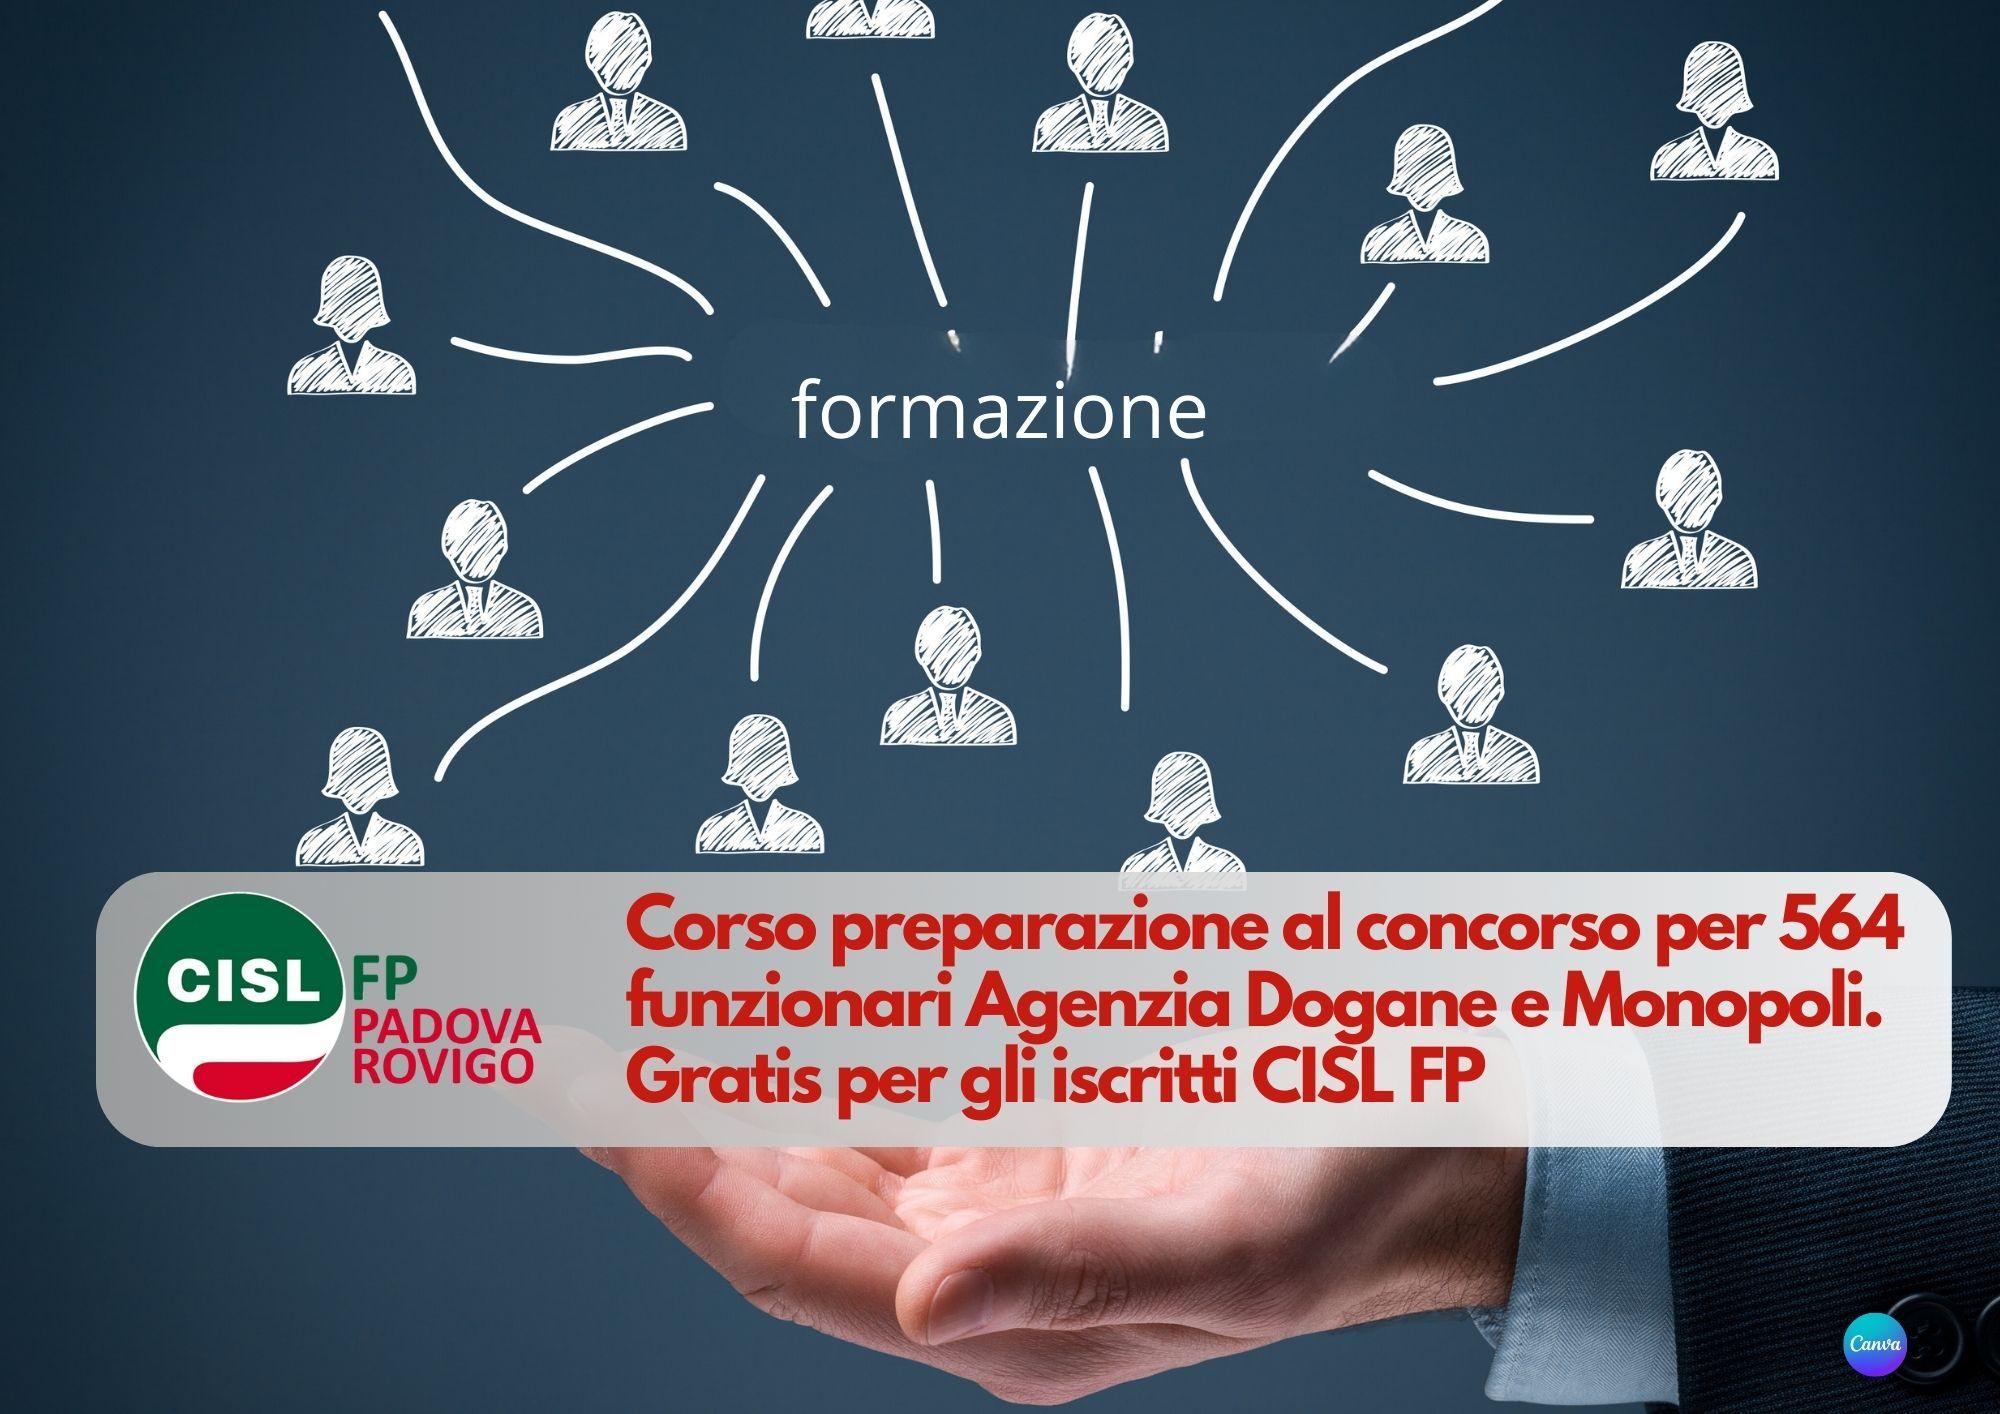 CISL FP Padova Rovigo. Concorso 564 funzionari Agenzia Dogane e Monopoli: corso di preparazione